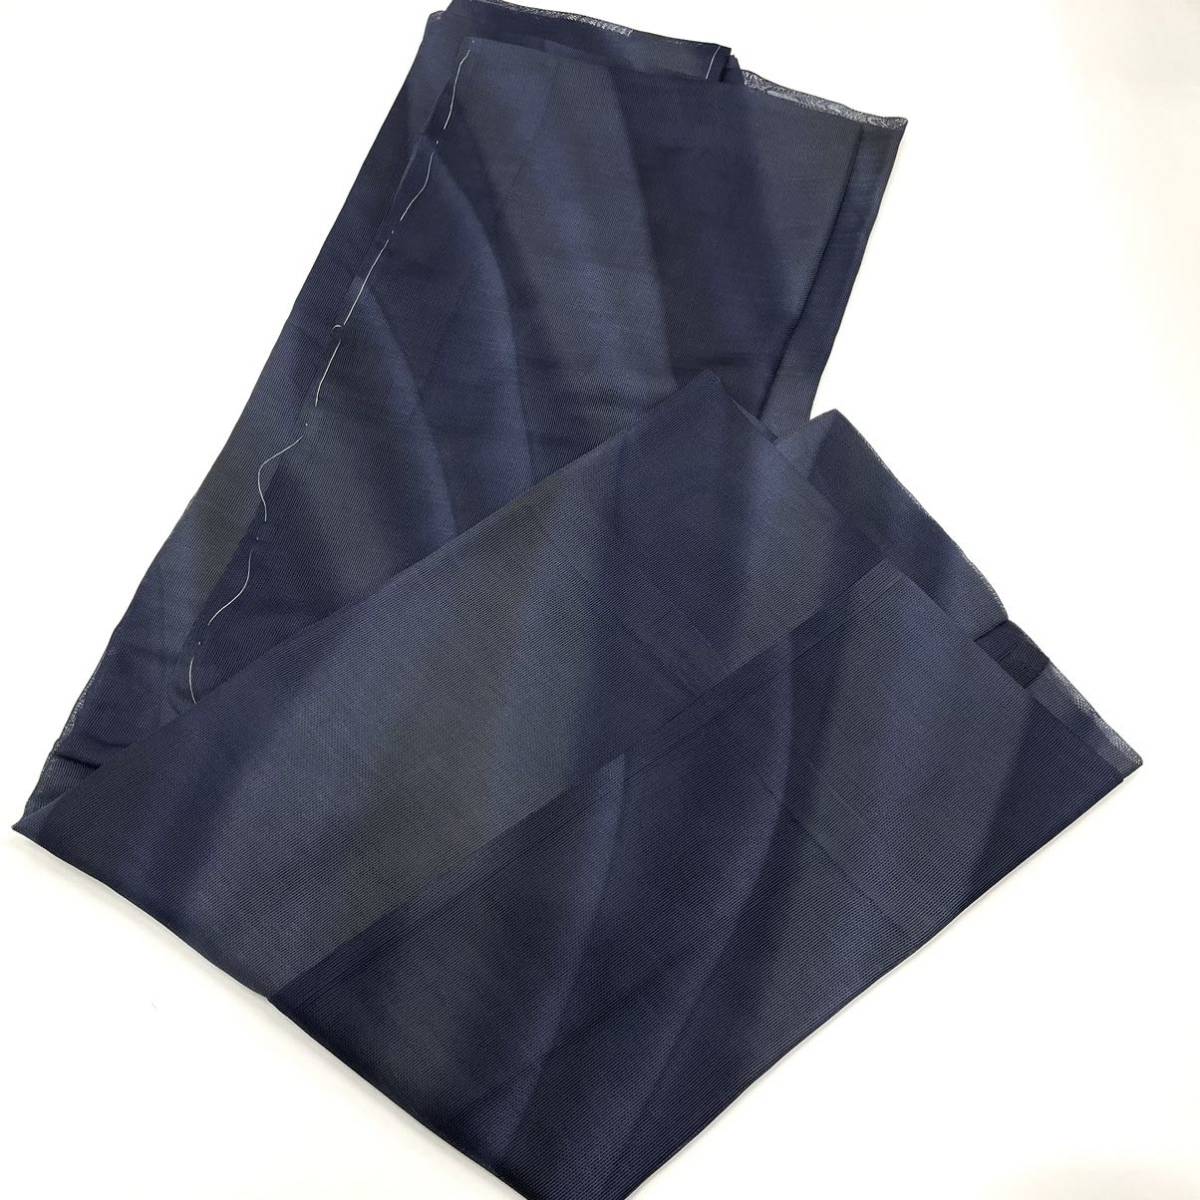  Toray si look японский костюм пальто Toray мусор исключая .si look .... перо тканый верхняя одежда . прозрачный совершенно новый одиночный .. пальто длинный серый темно-синий цвет темно-синий 